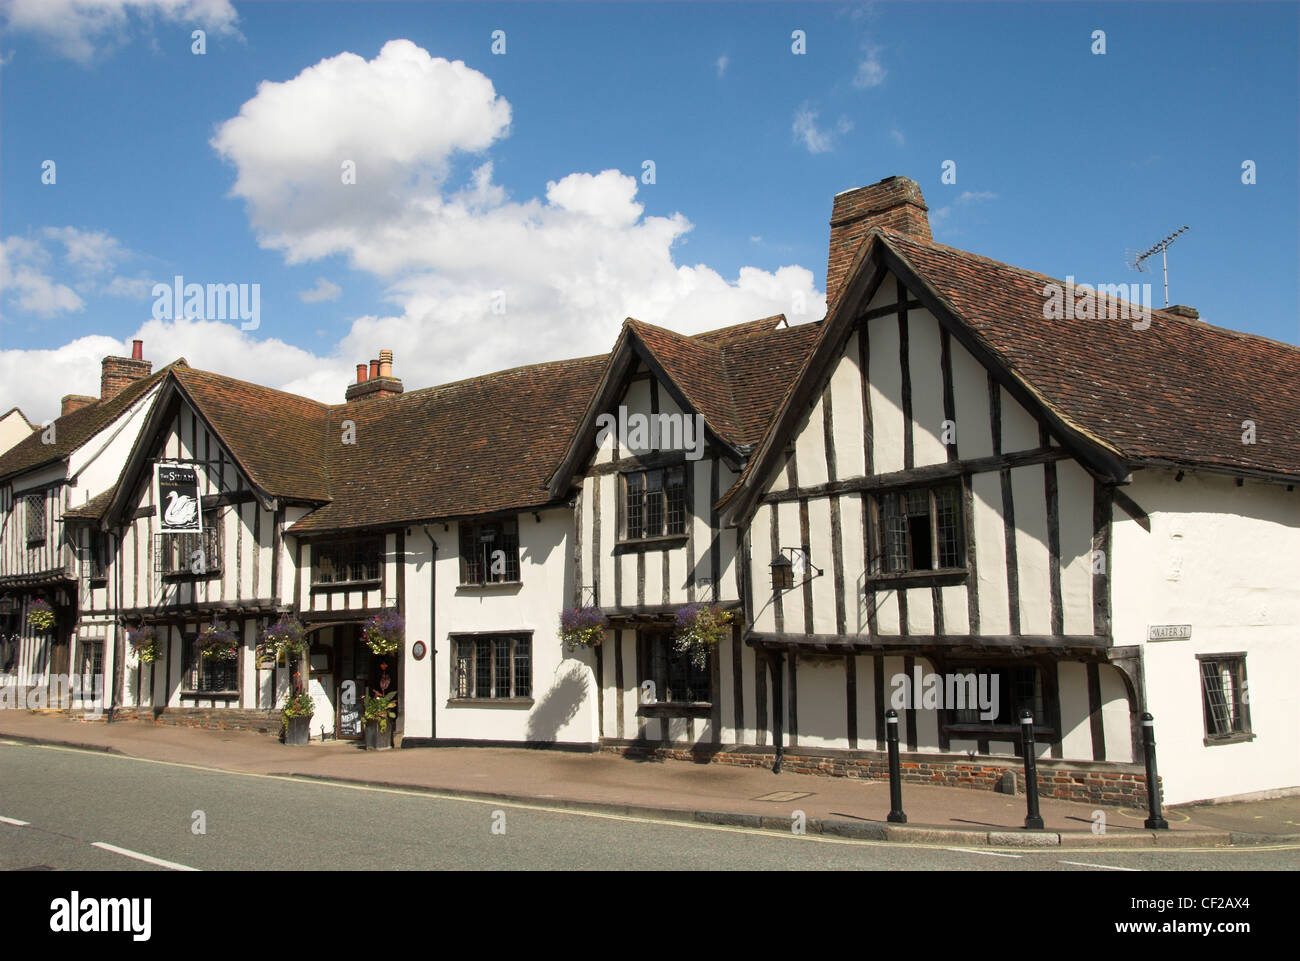 The Swan Hotel, ein englisches Landhotel in einem mittelalterlichen Fachwerkbau aus dem 15. Jahrhundert. Stockfoto